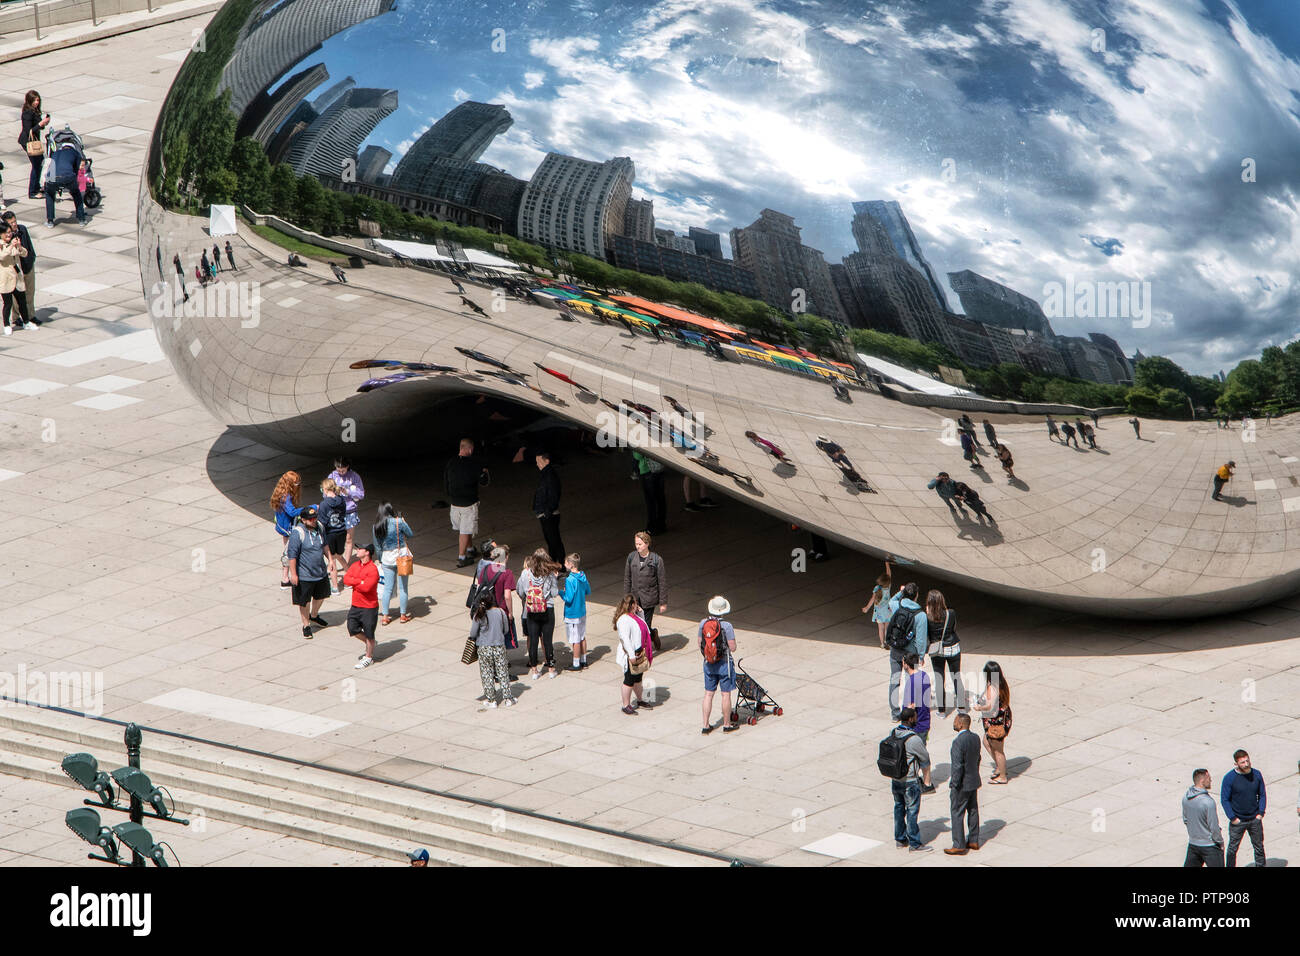 Scultura di mirroring del Cloud Gate, il fagiolo, dall artista britannico Anish Kapoor, Millennium Park di Chicago, Illinois, Stati Uniti d'America Foto Stock